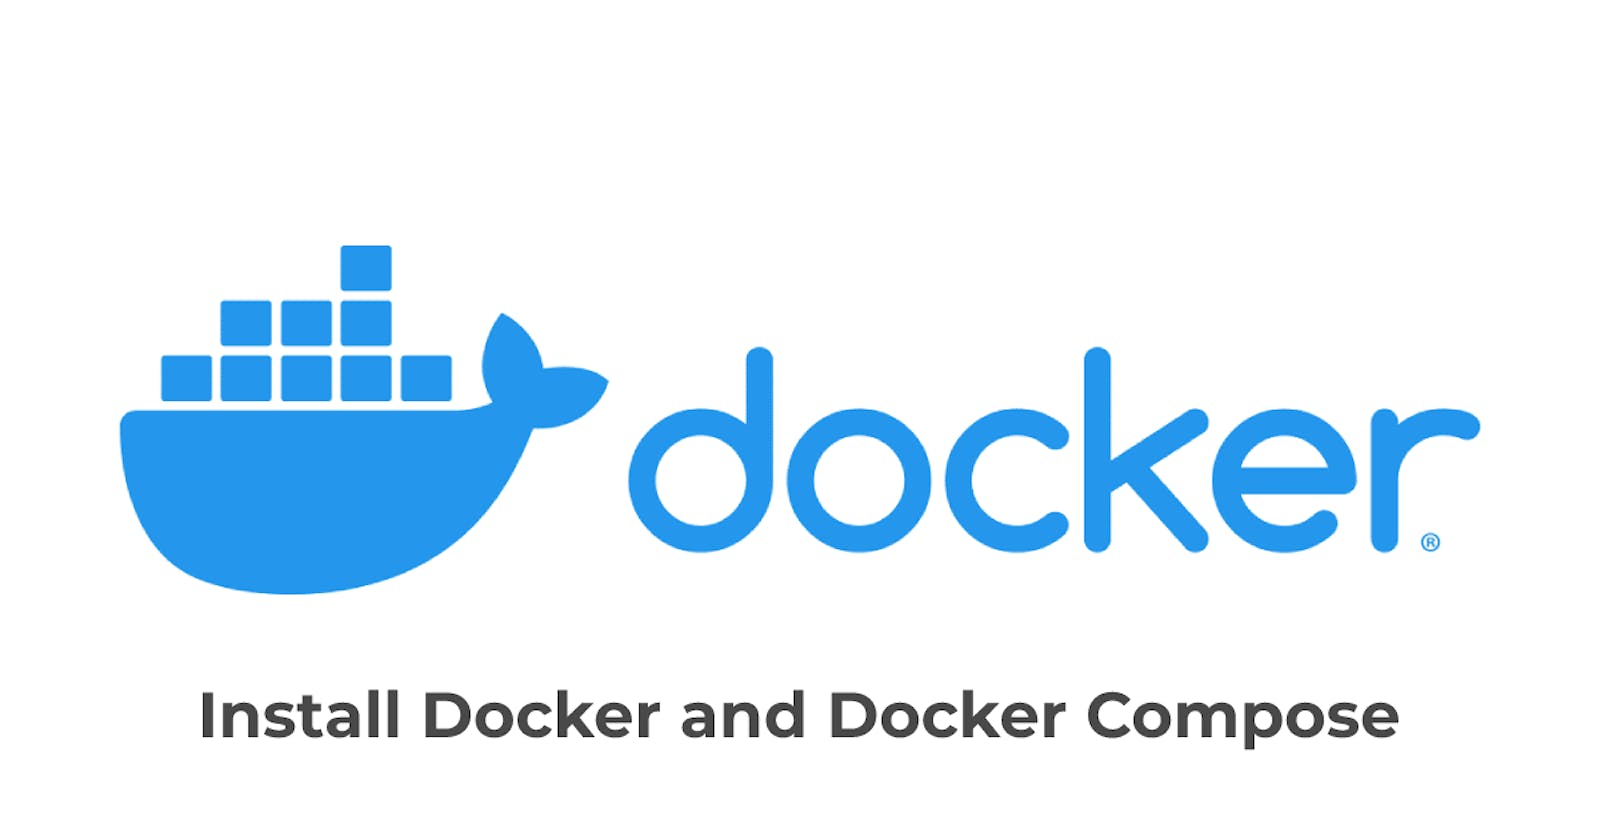 Installing Docker Compose